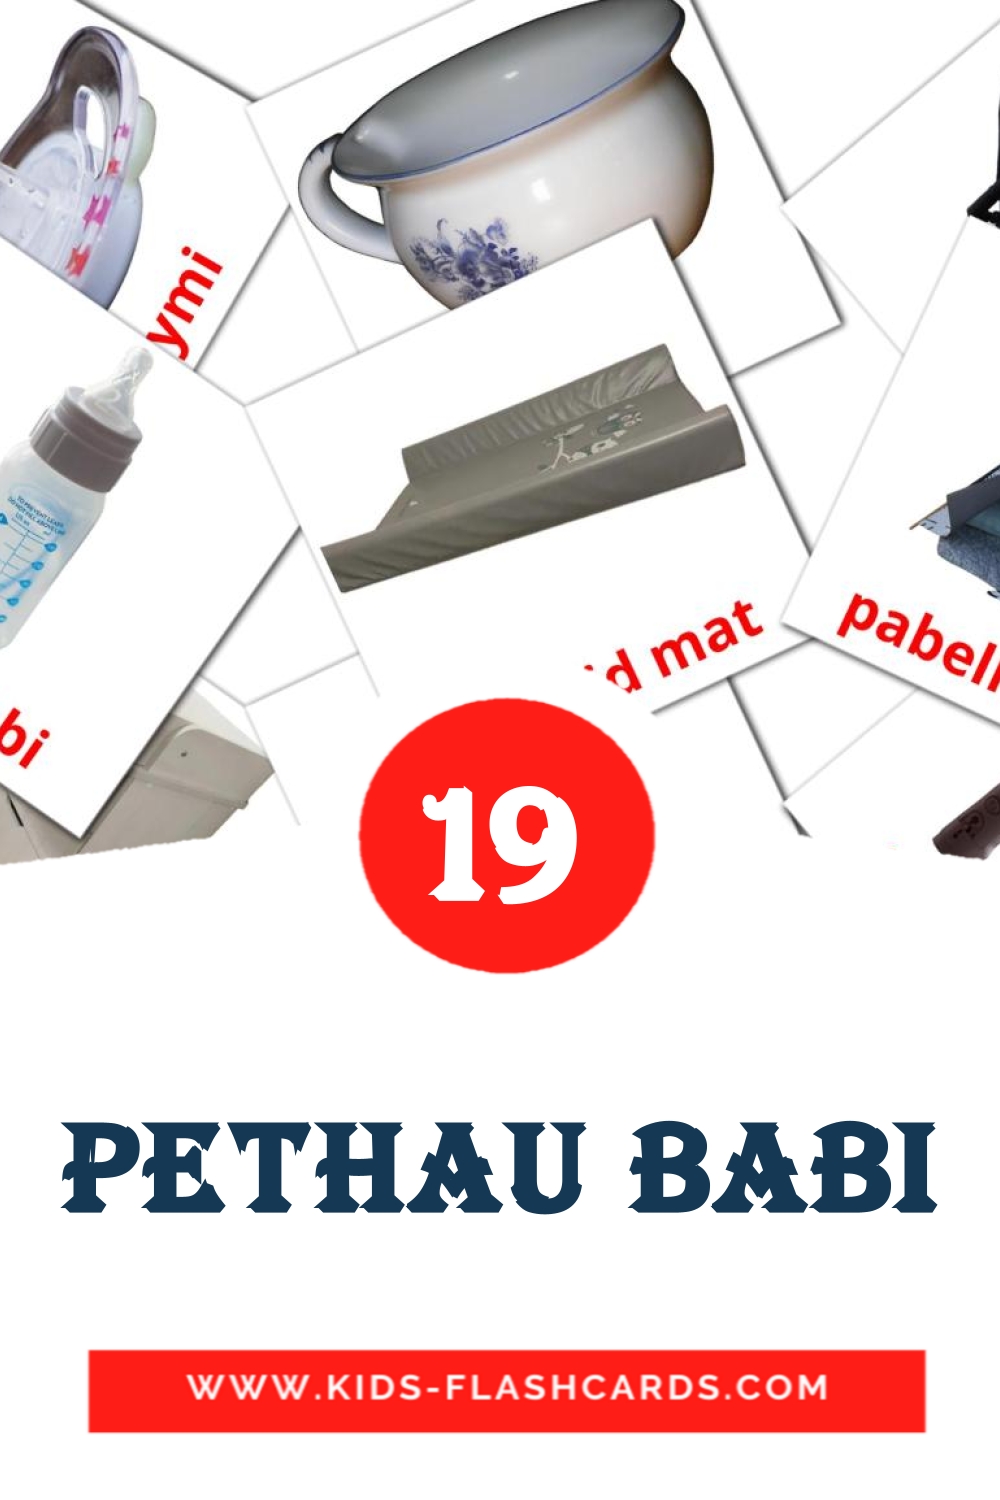 19 cartes illustrées de Pethau babi pour la maternelle en gallois